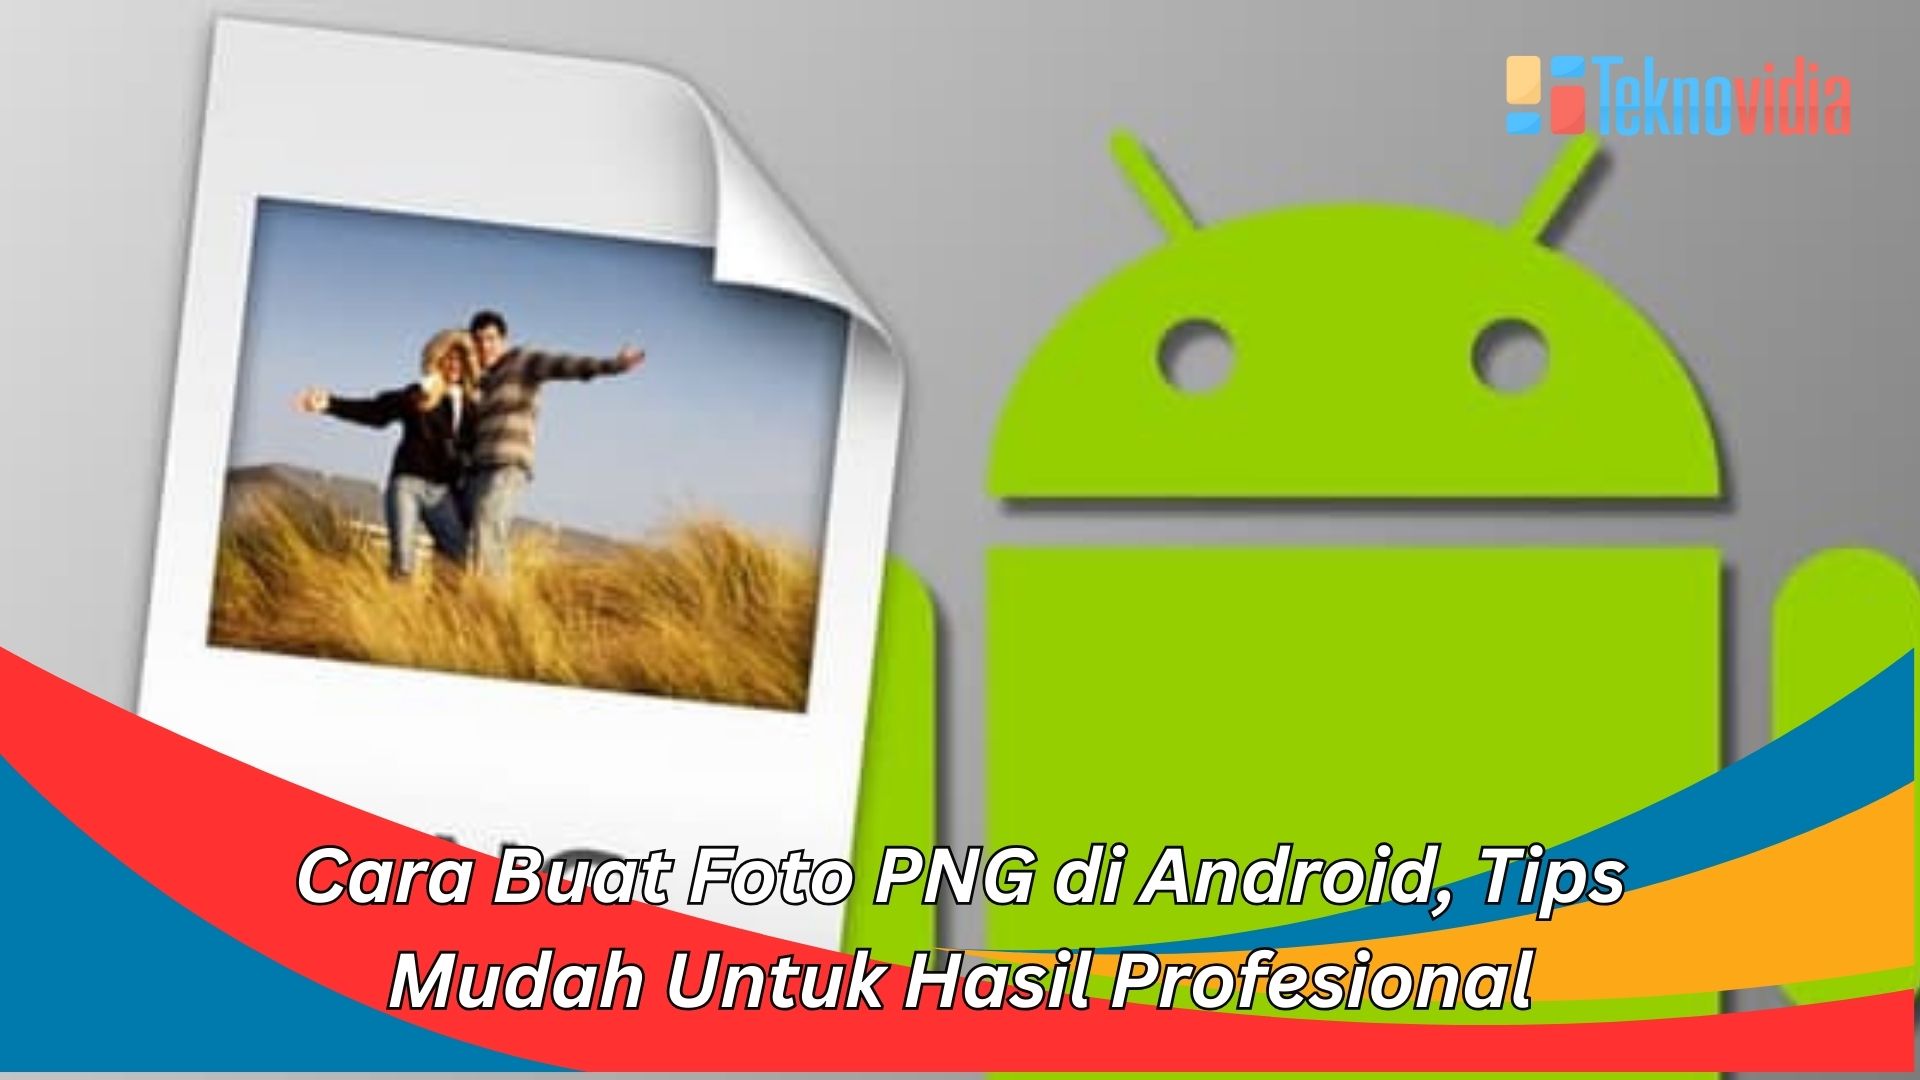 Cara Buat Foto PNG di Android, Tips Mudah Untuk Hasil Profesional